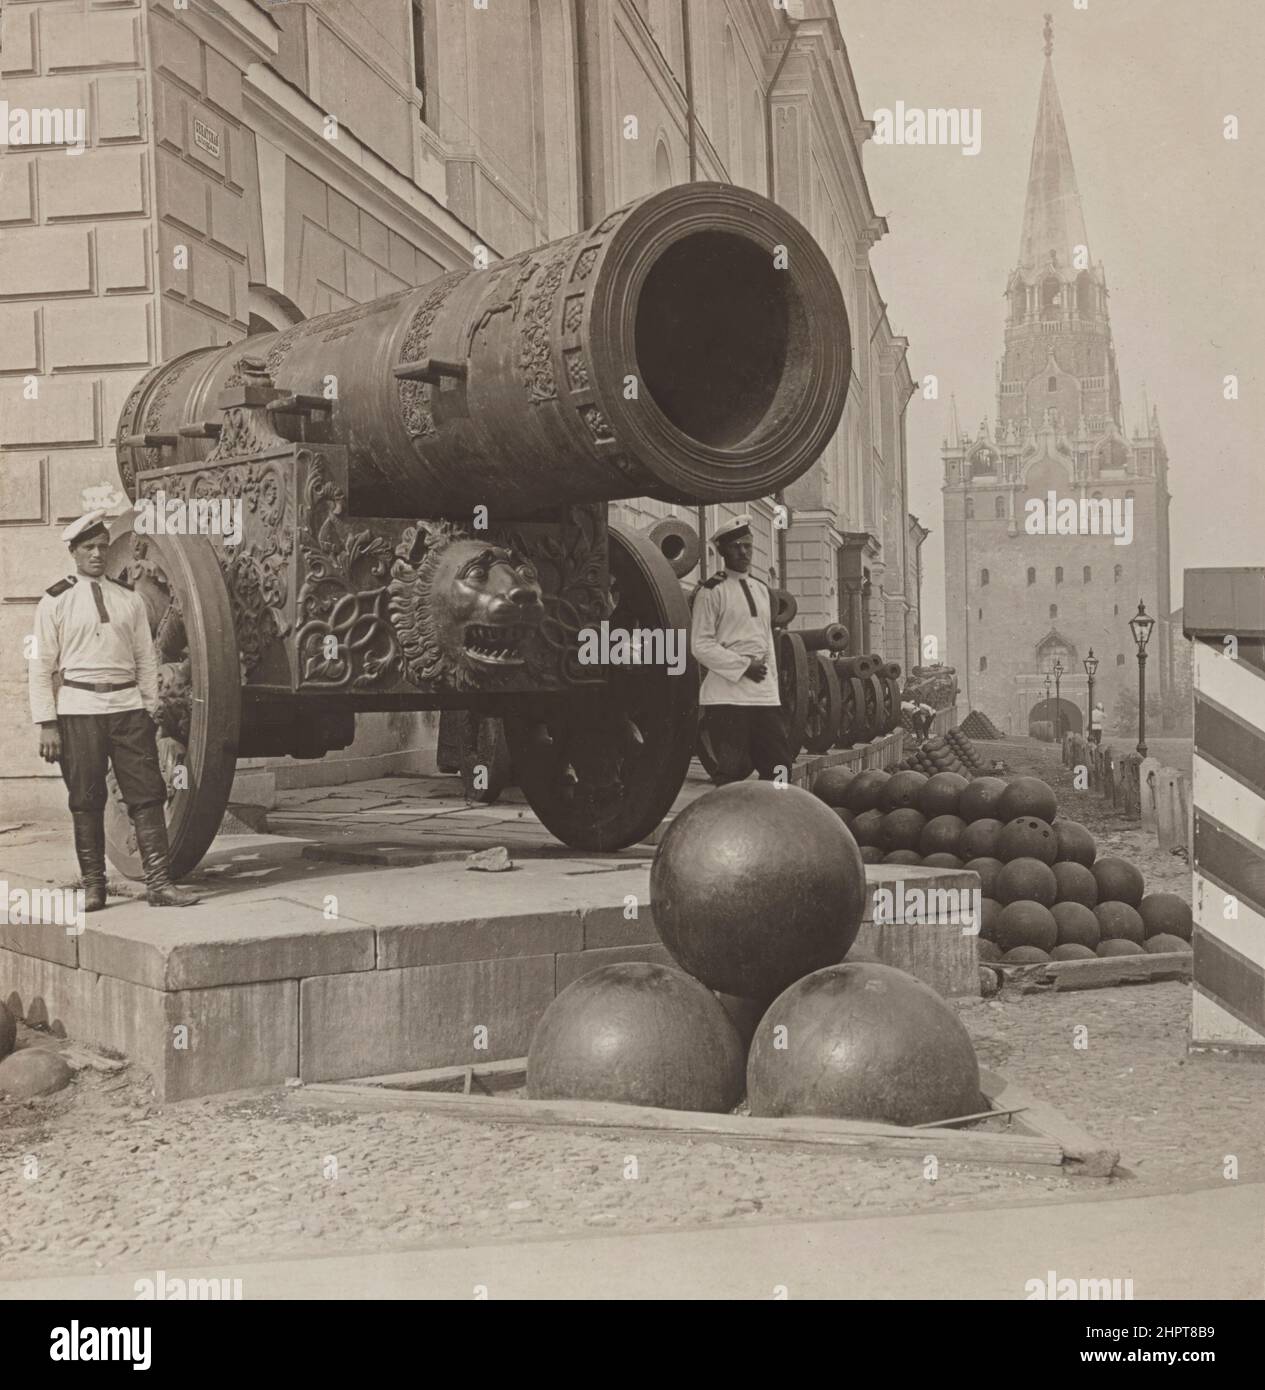 Foto vintage del Zar Cannon en el Kremlin de Moscú. Imperio ruso. 1900s El Tsar Cannon es un gran pedazo de artillería de la época moderna (conocido como a b Foto de stock